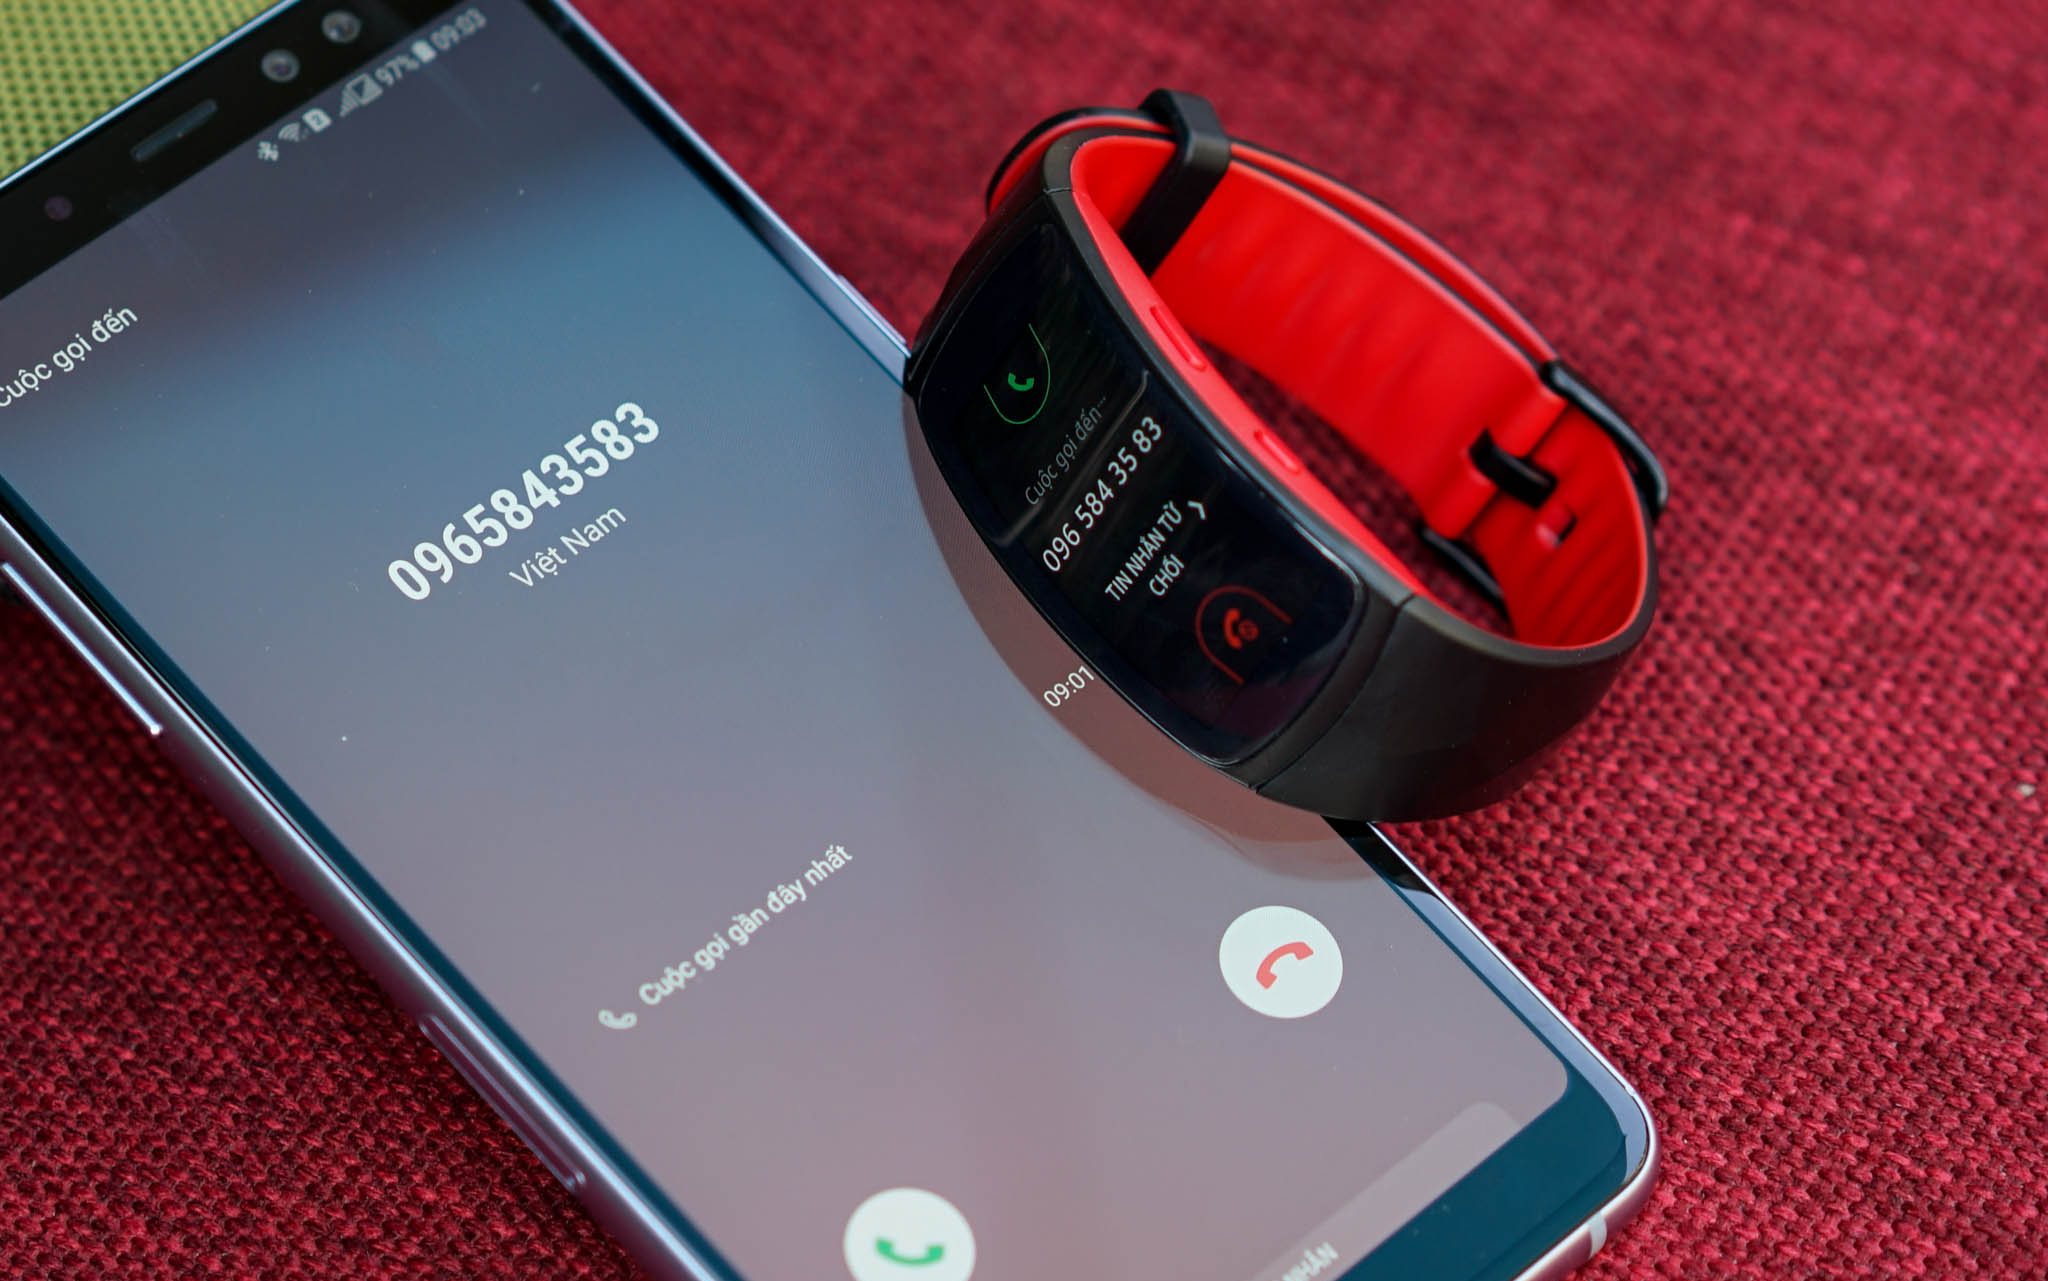 Màn hình hiển thị cuộc gọi đến trên Samsung Gear Fit2 Pro được kết nối với Smartphone